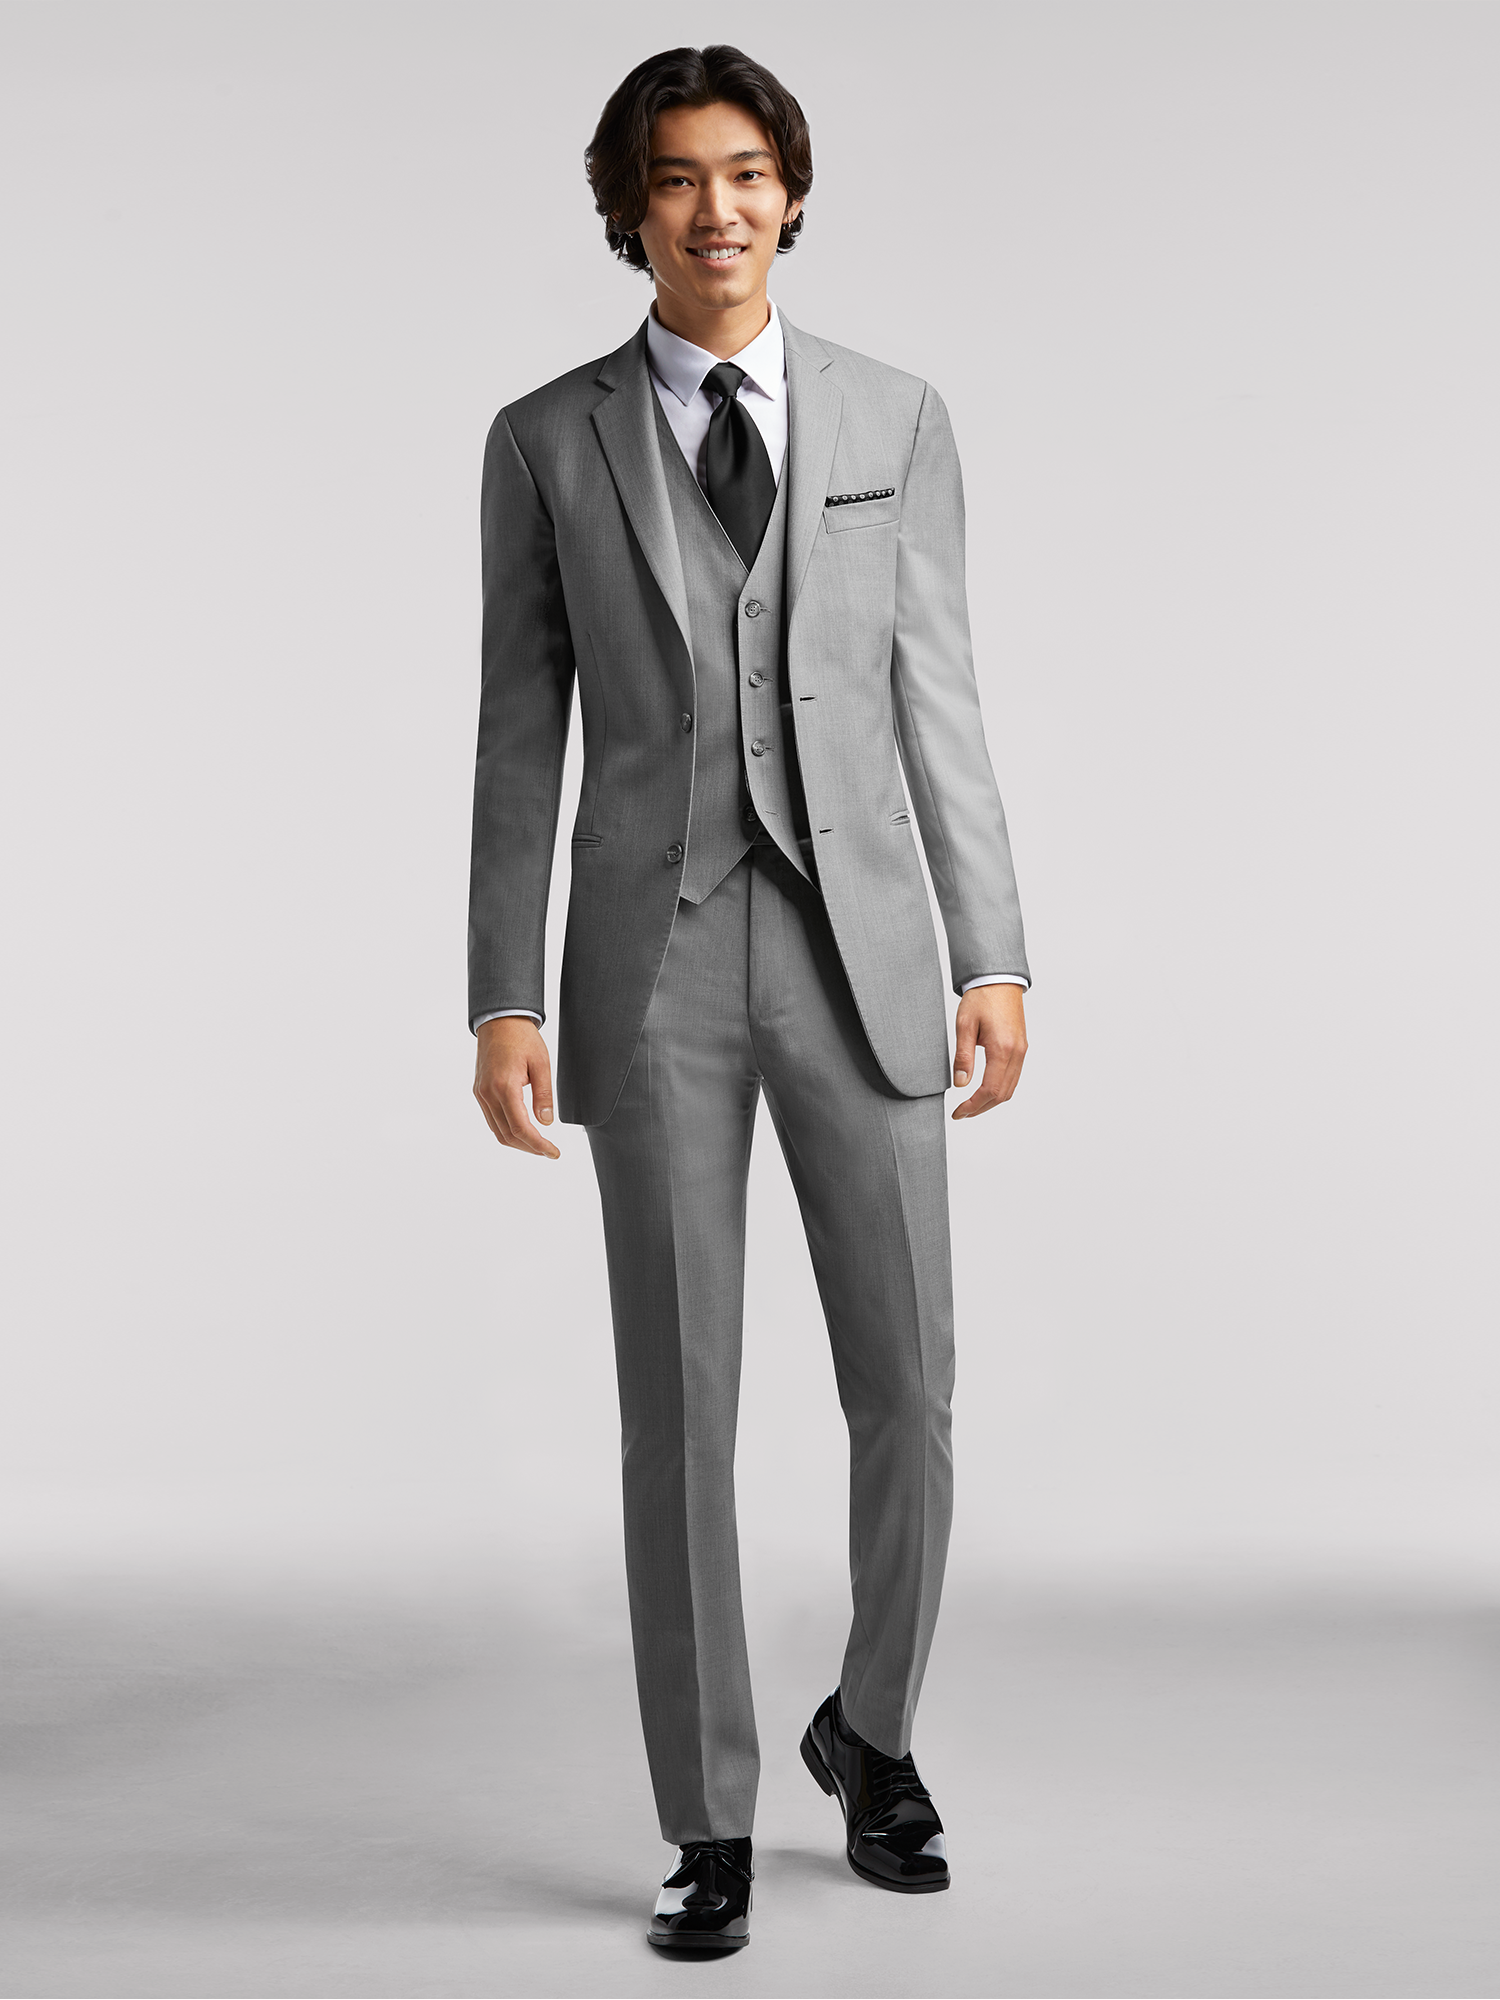 Medium Gray Suit